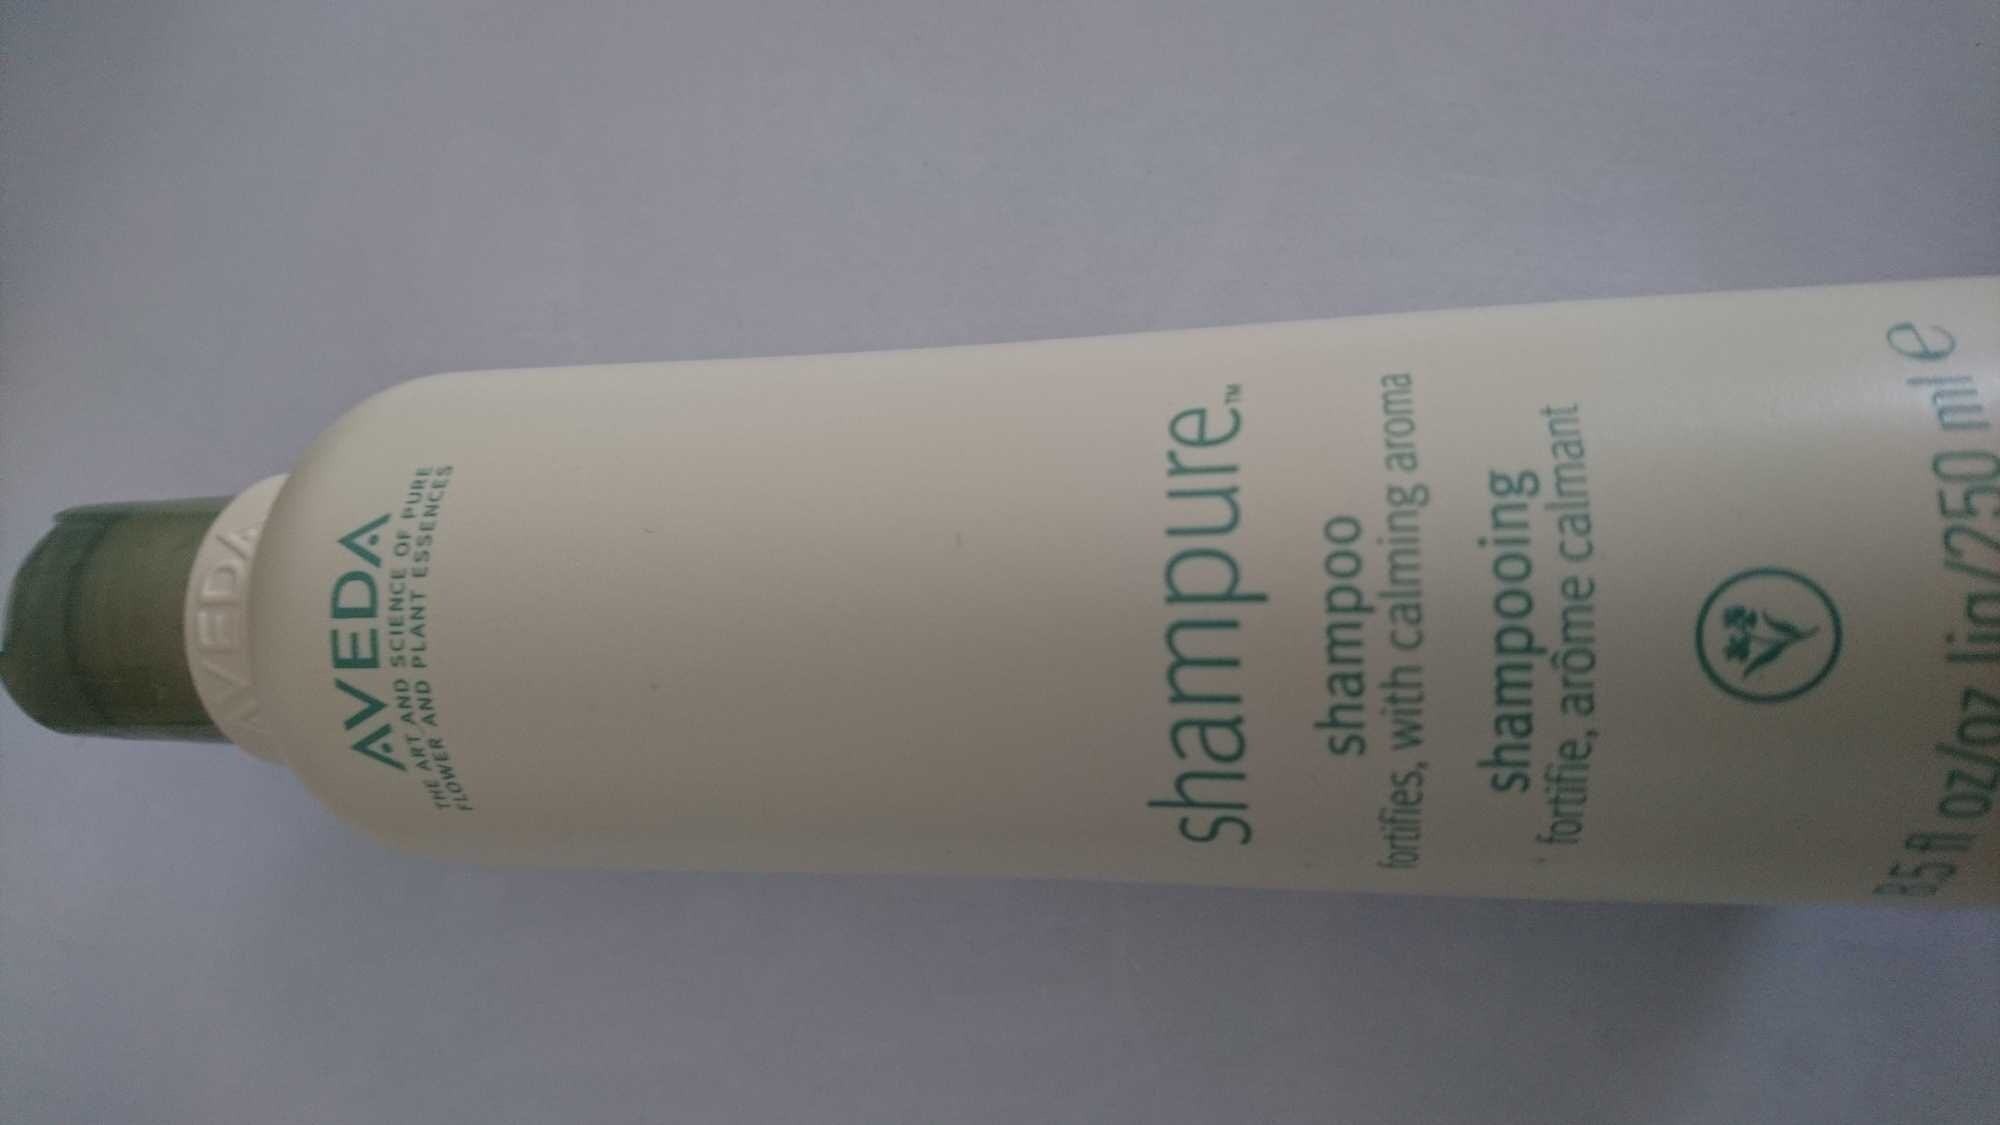 Shampure, shampooing fortifie, arôme calmant - Produto - fr